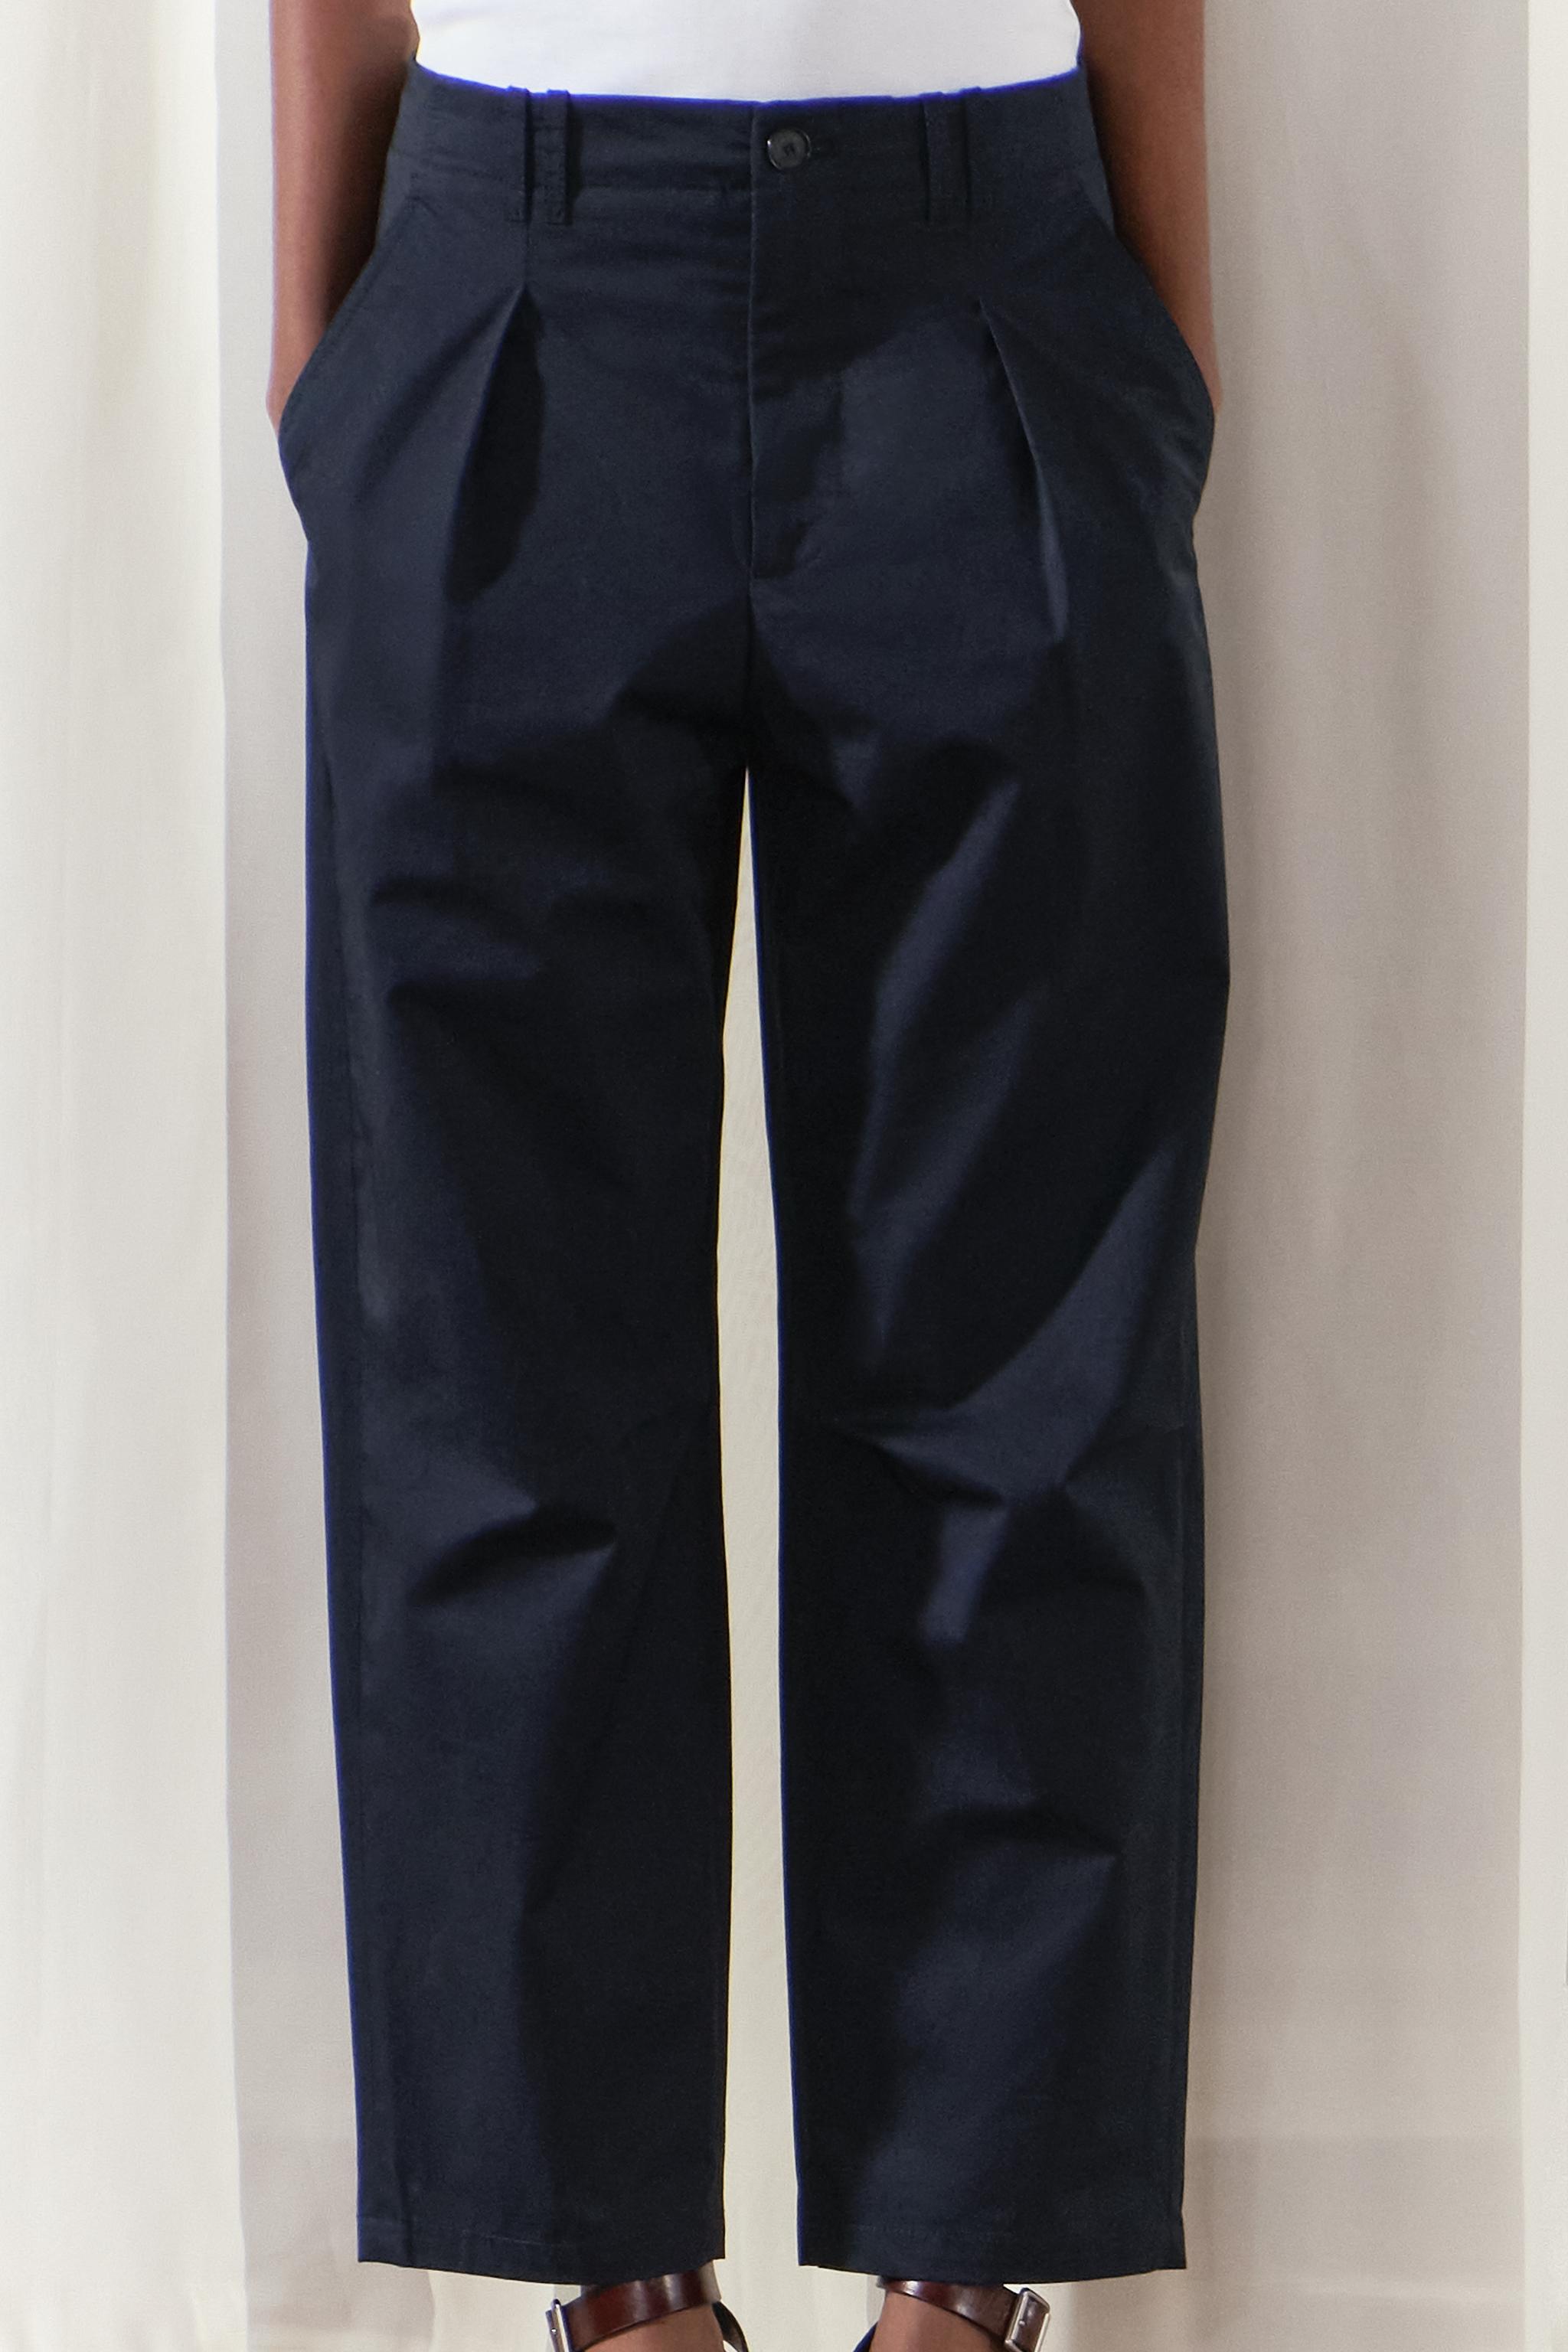 Los 4 pantalones de Zara que necesitas para este otoño/invierno